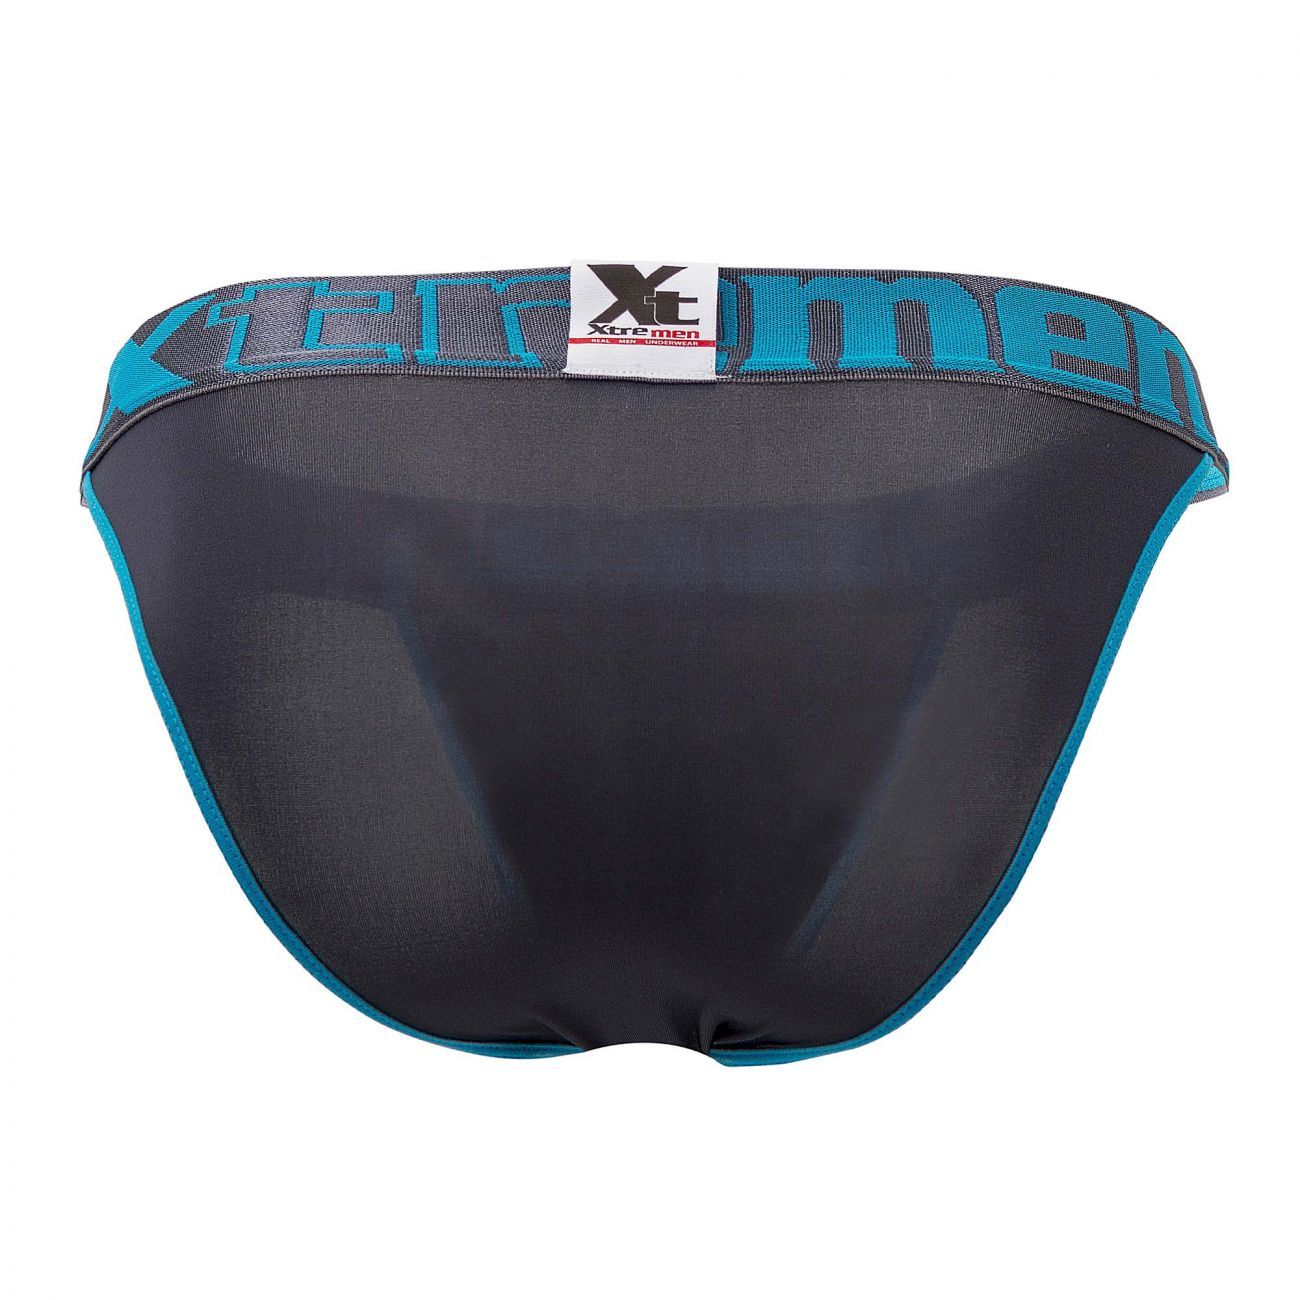 Xtremen 91057X-3 3PK Bikini Gray-Blue-Pink Plus Sizes